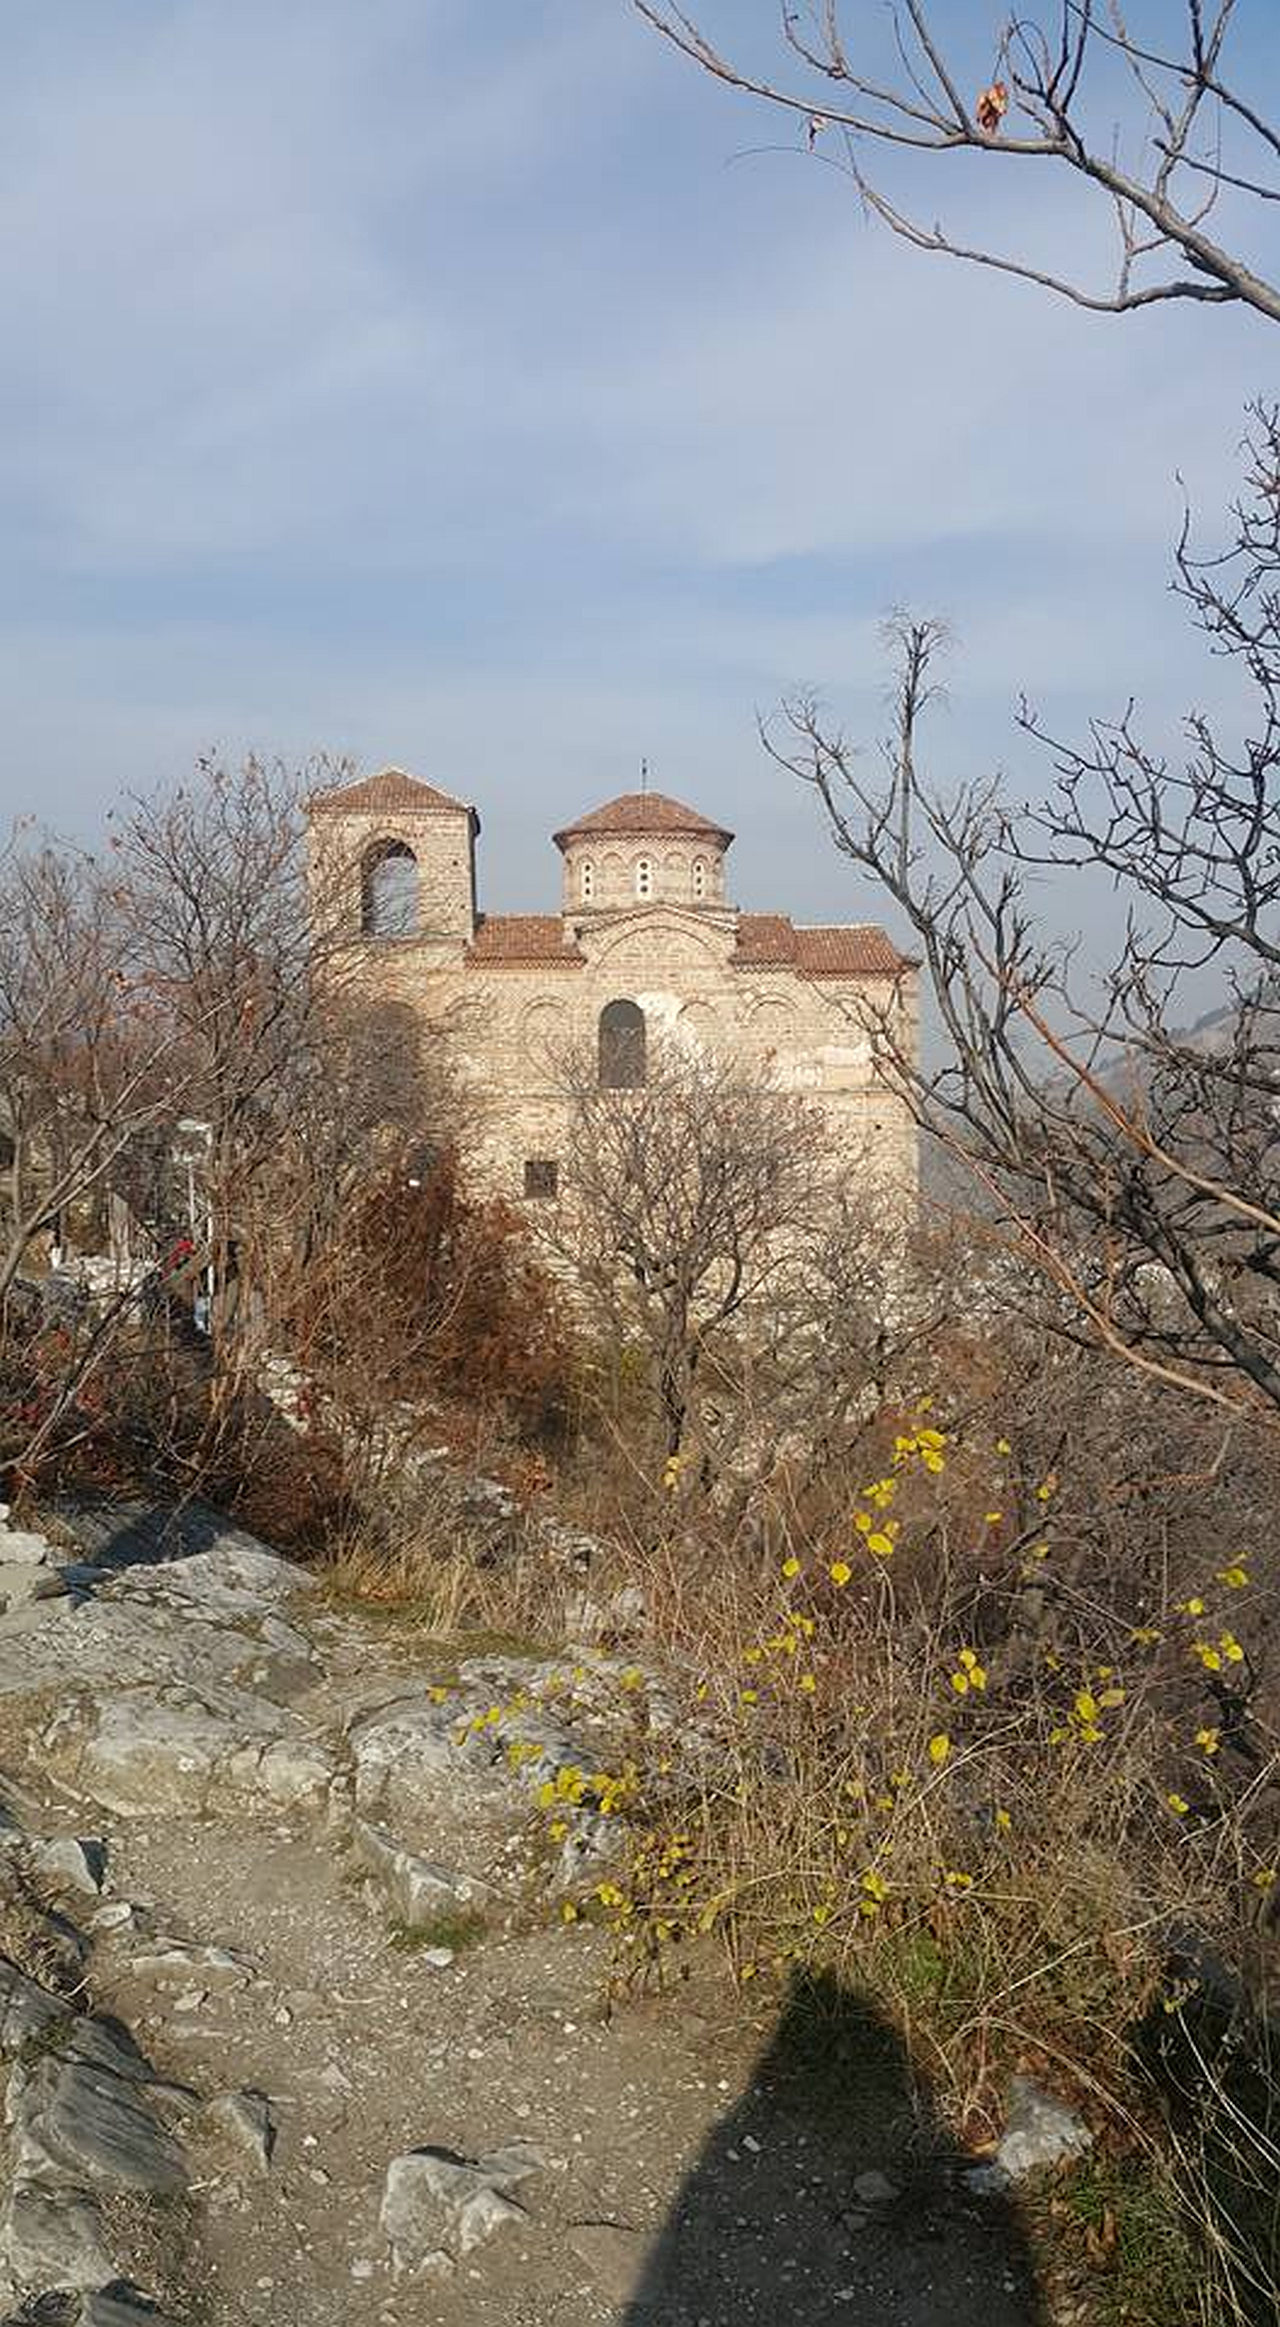 <p>Високо в планината като страж стои една от най-красивите крепости в България - Асеновата крепост</p>